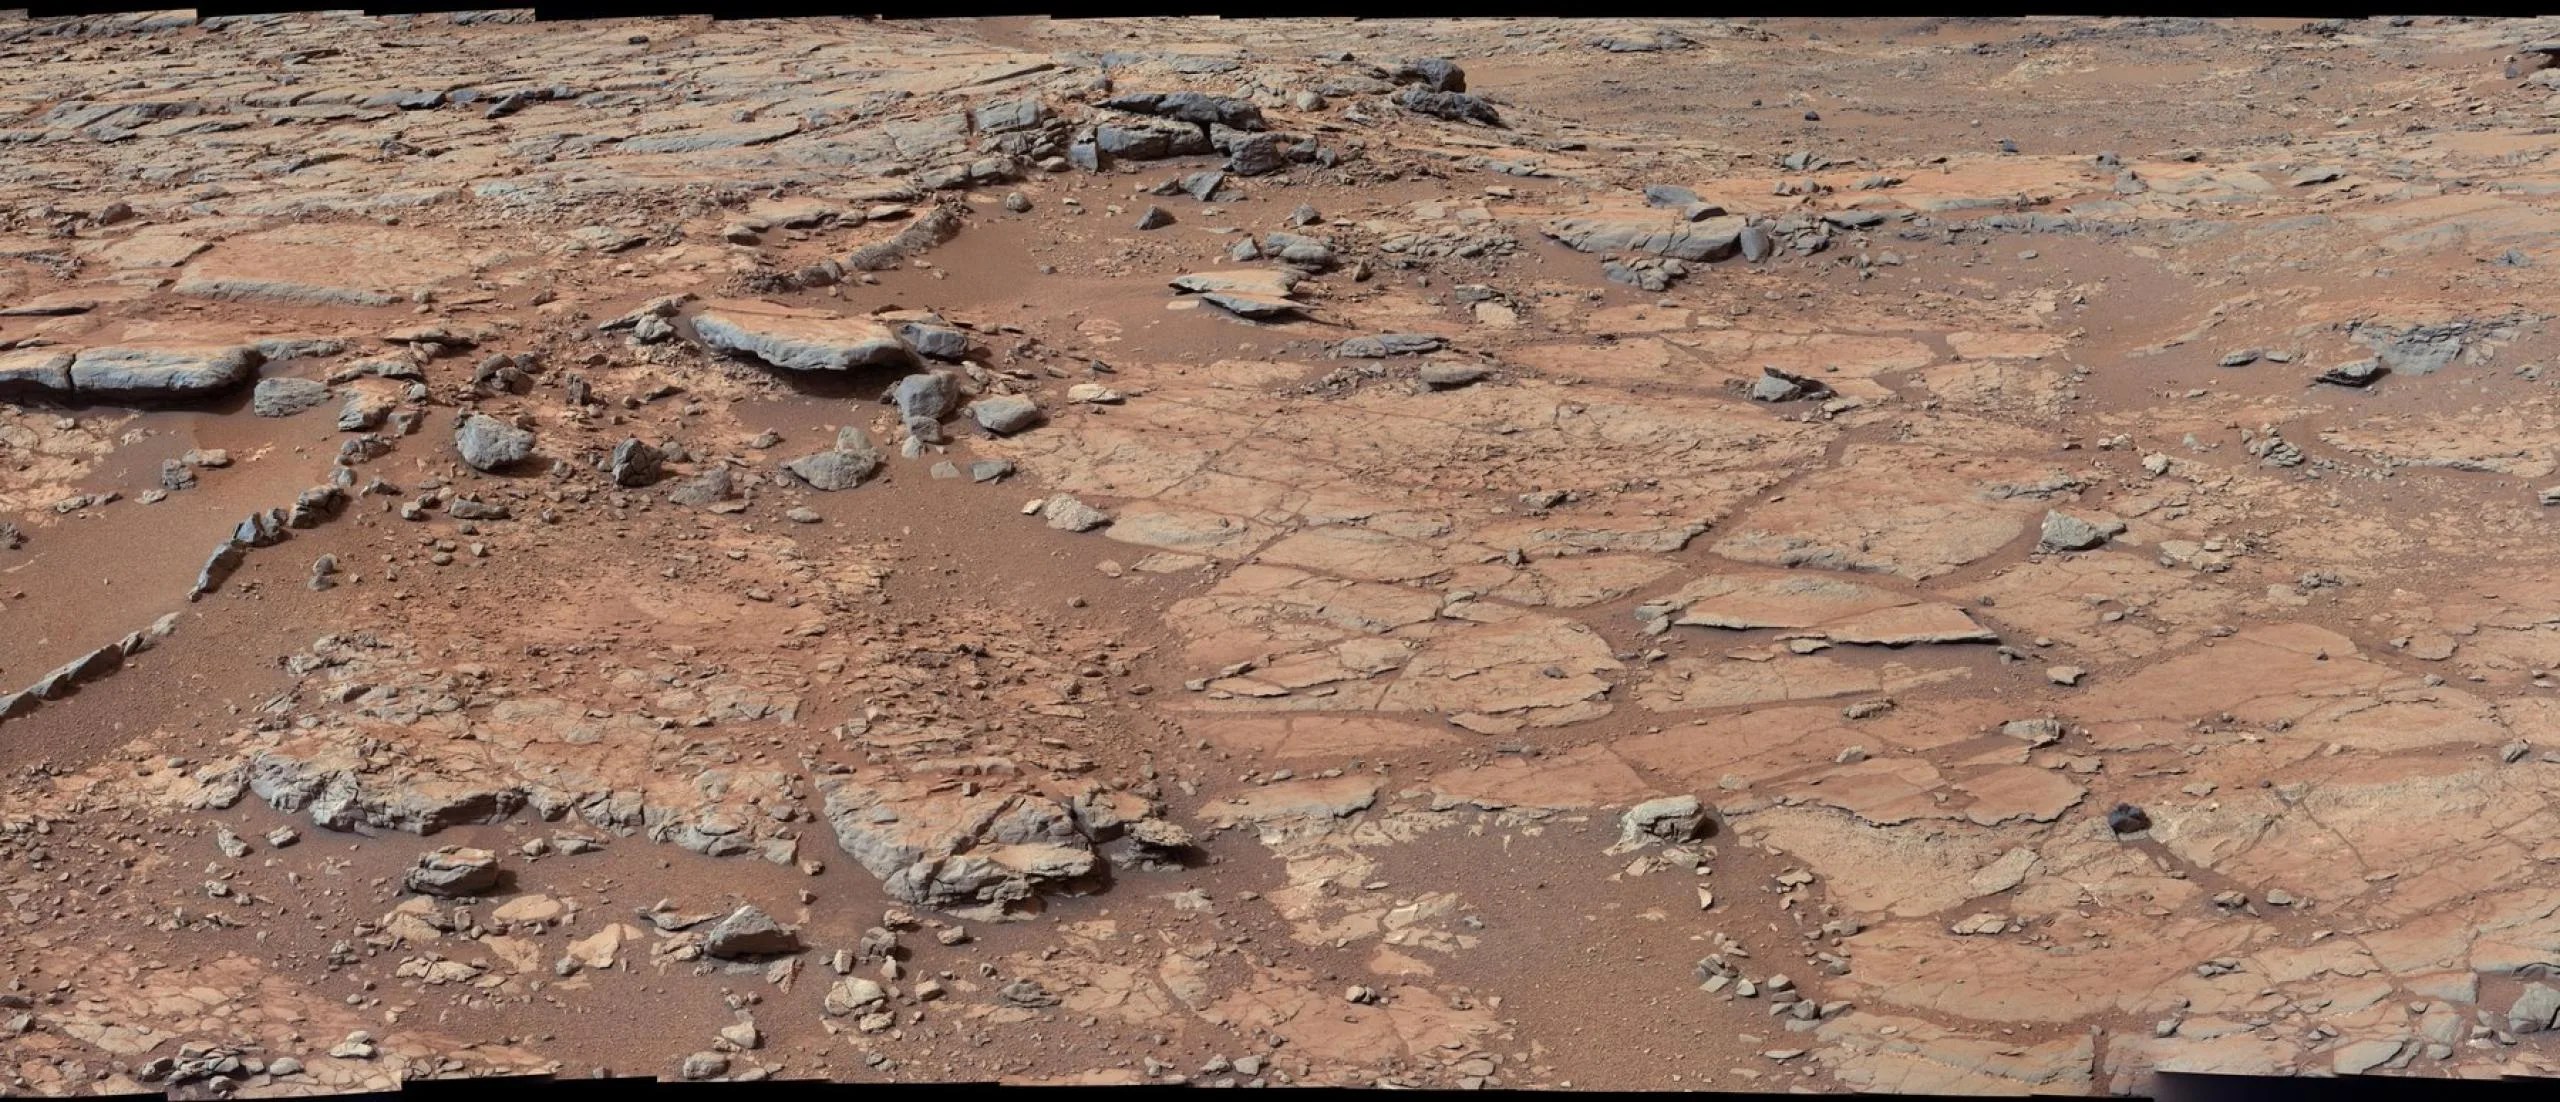 Curiosity, el vehículo explorador de la NASA en Marte, usó la cámara de su mástil, o Mastcam, para capturar esta área en el borde de un lugar apodado “Yellowknife Bay”. La imagen es una combinación de tres mosaicos tomados el 24, 25 y 28 de diciembre de 2012 (los días marcianos, o soles, 137, 138 y 141 de la misión). Crédito: NASA/JPL-Caltech/MSSS